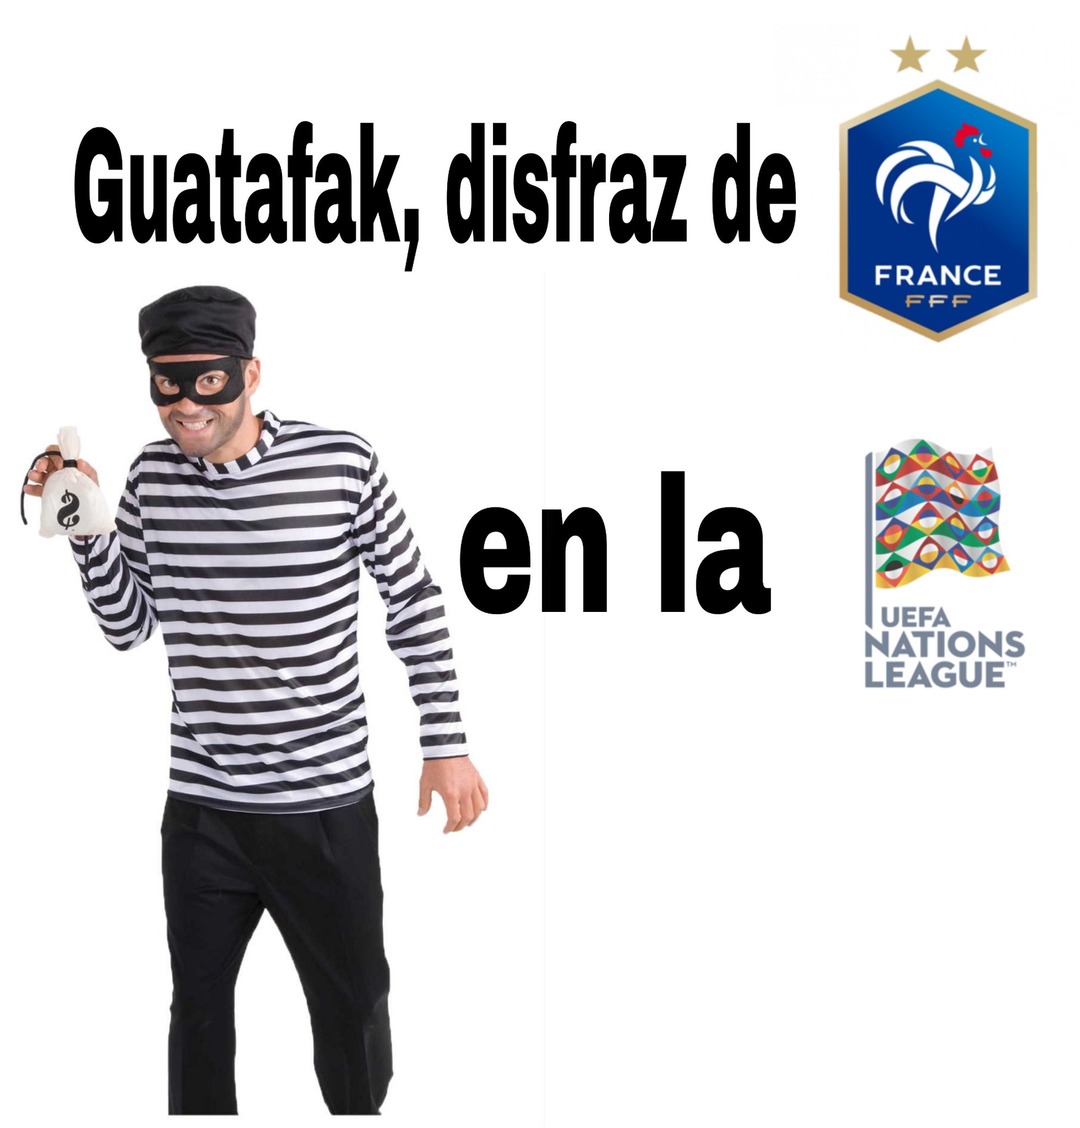 Francia en la uefa nations league be like - meme